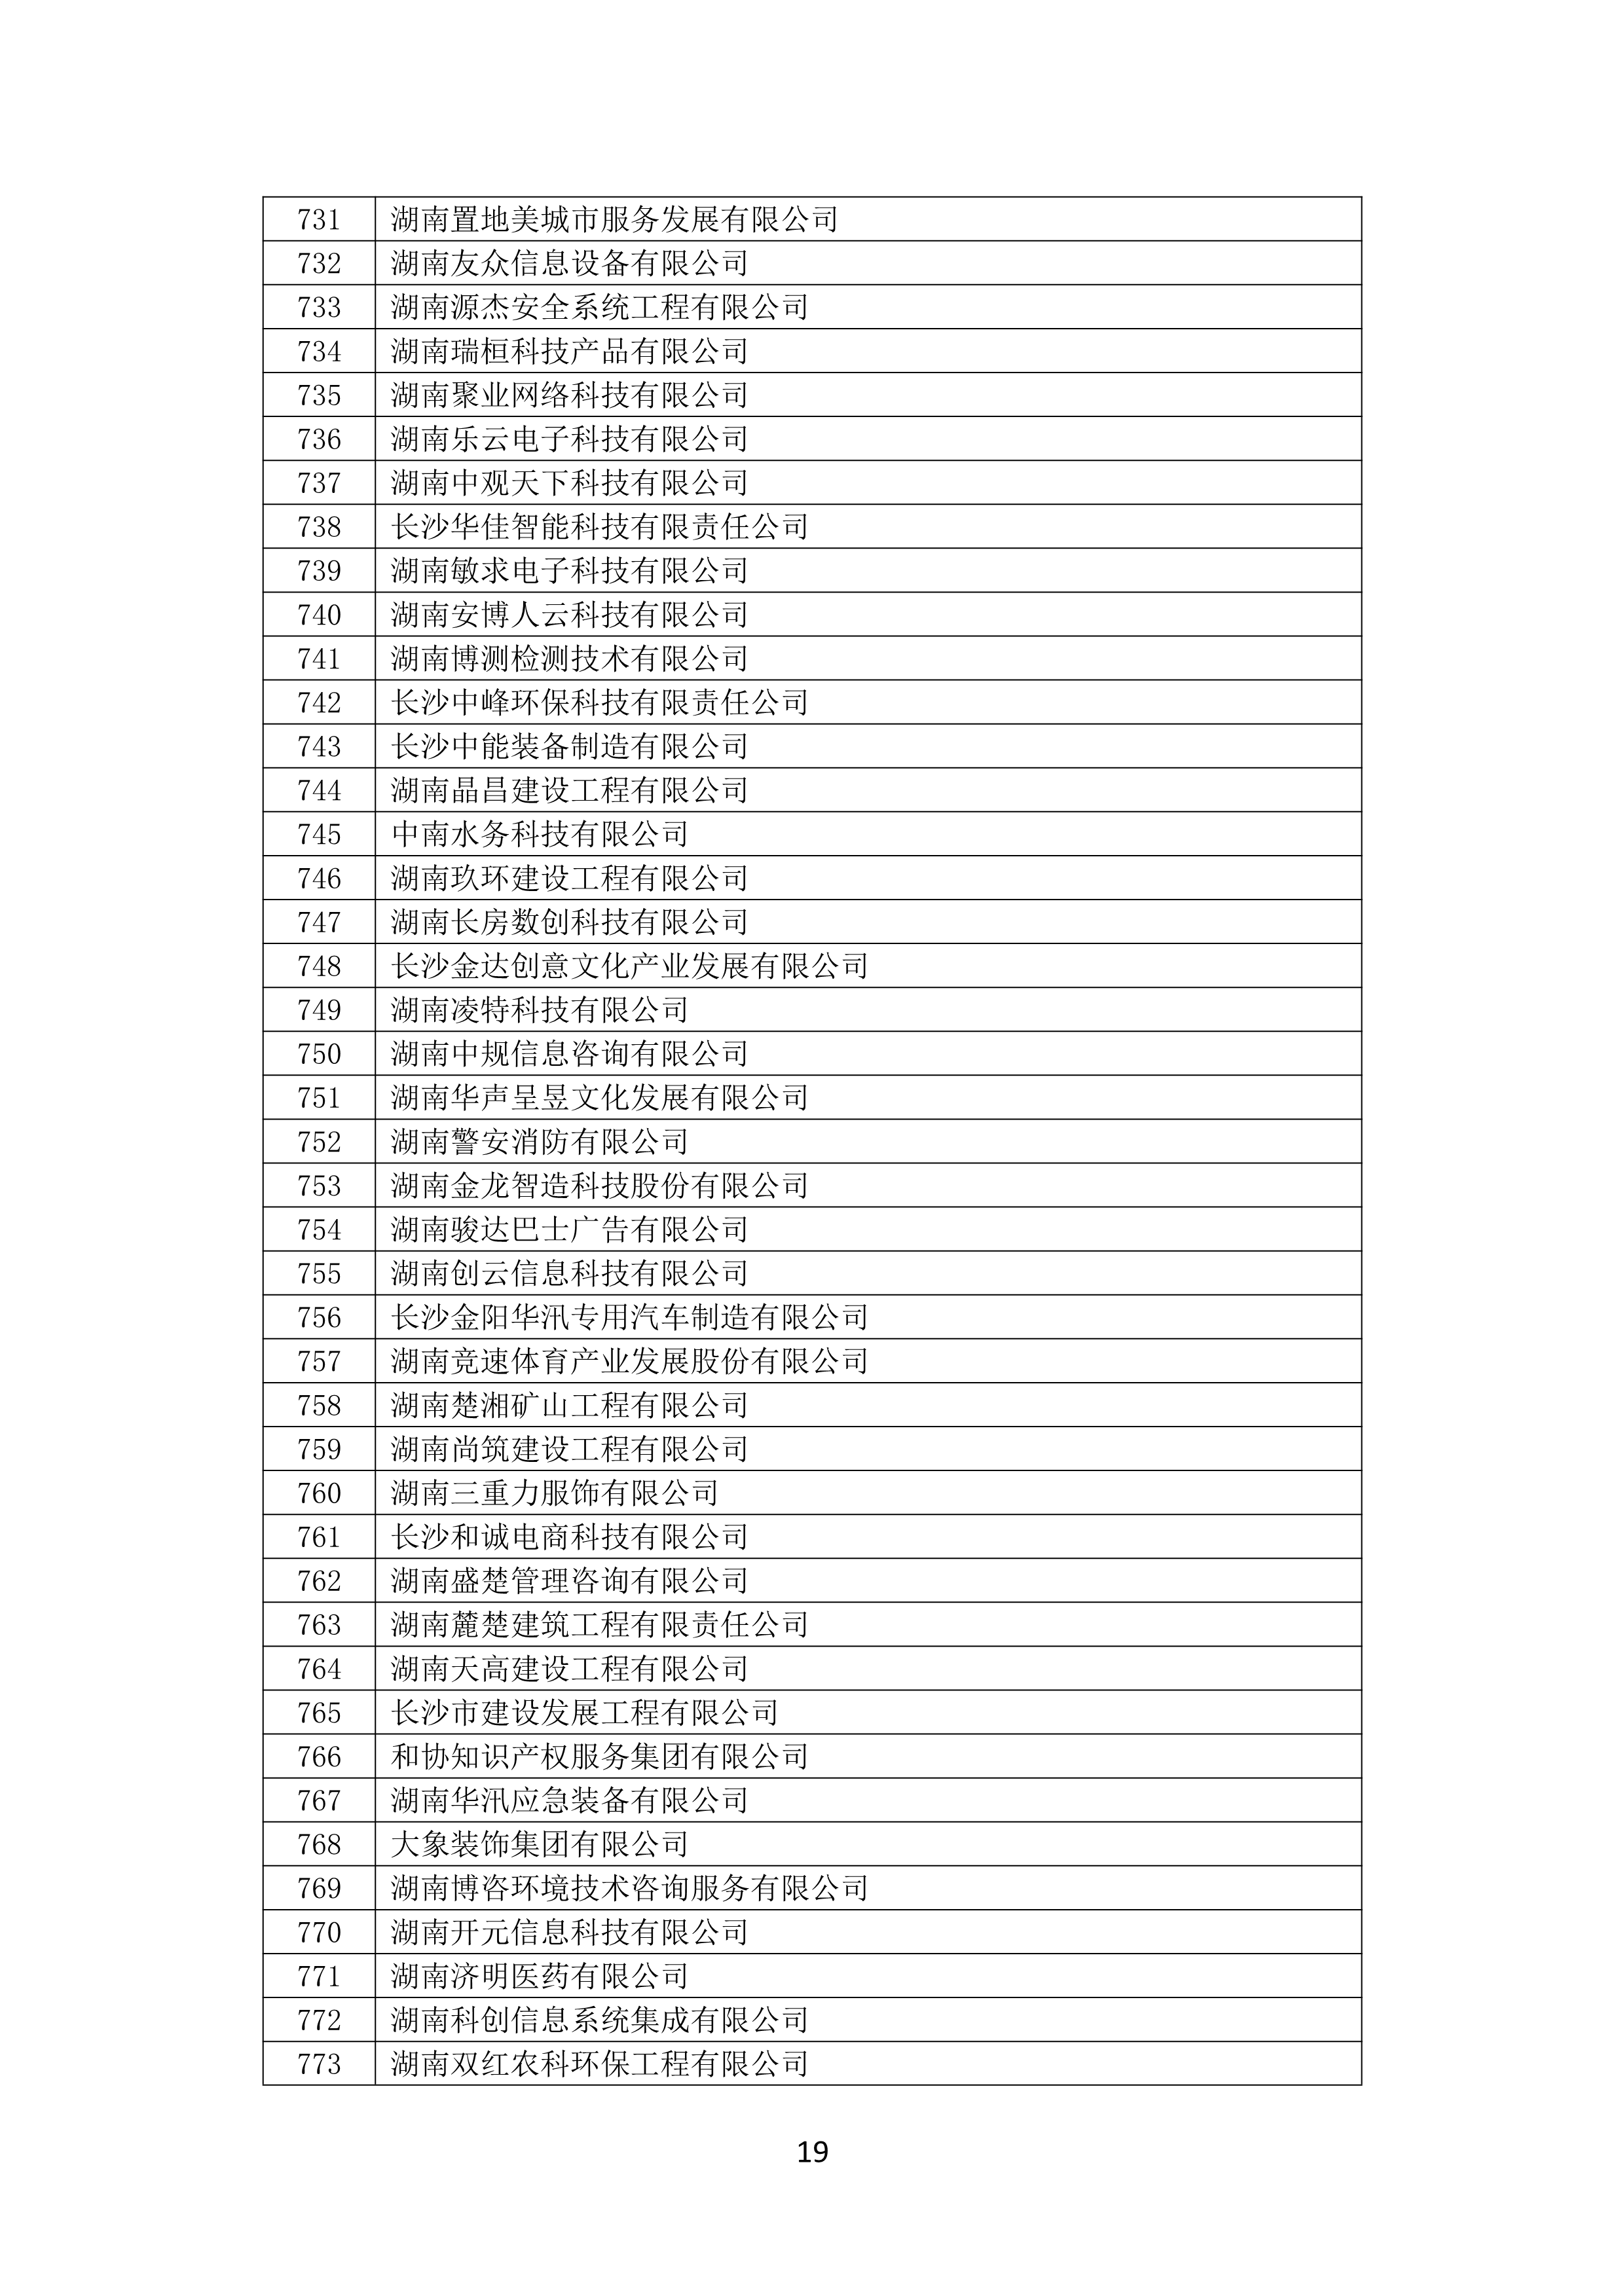 2021 年(nián)度湖南省守合同重信用企業名單_20.png